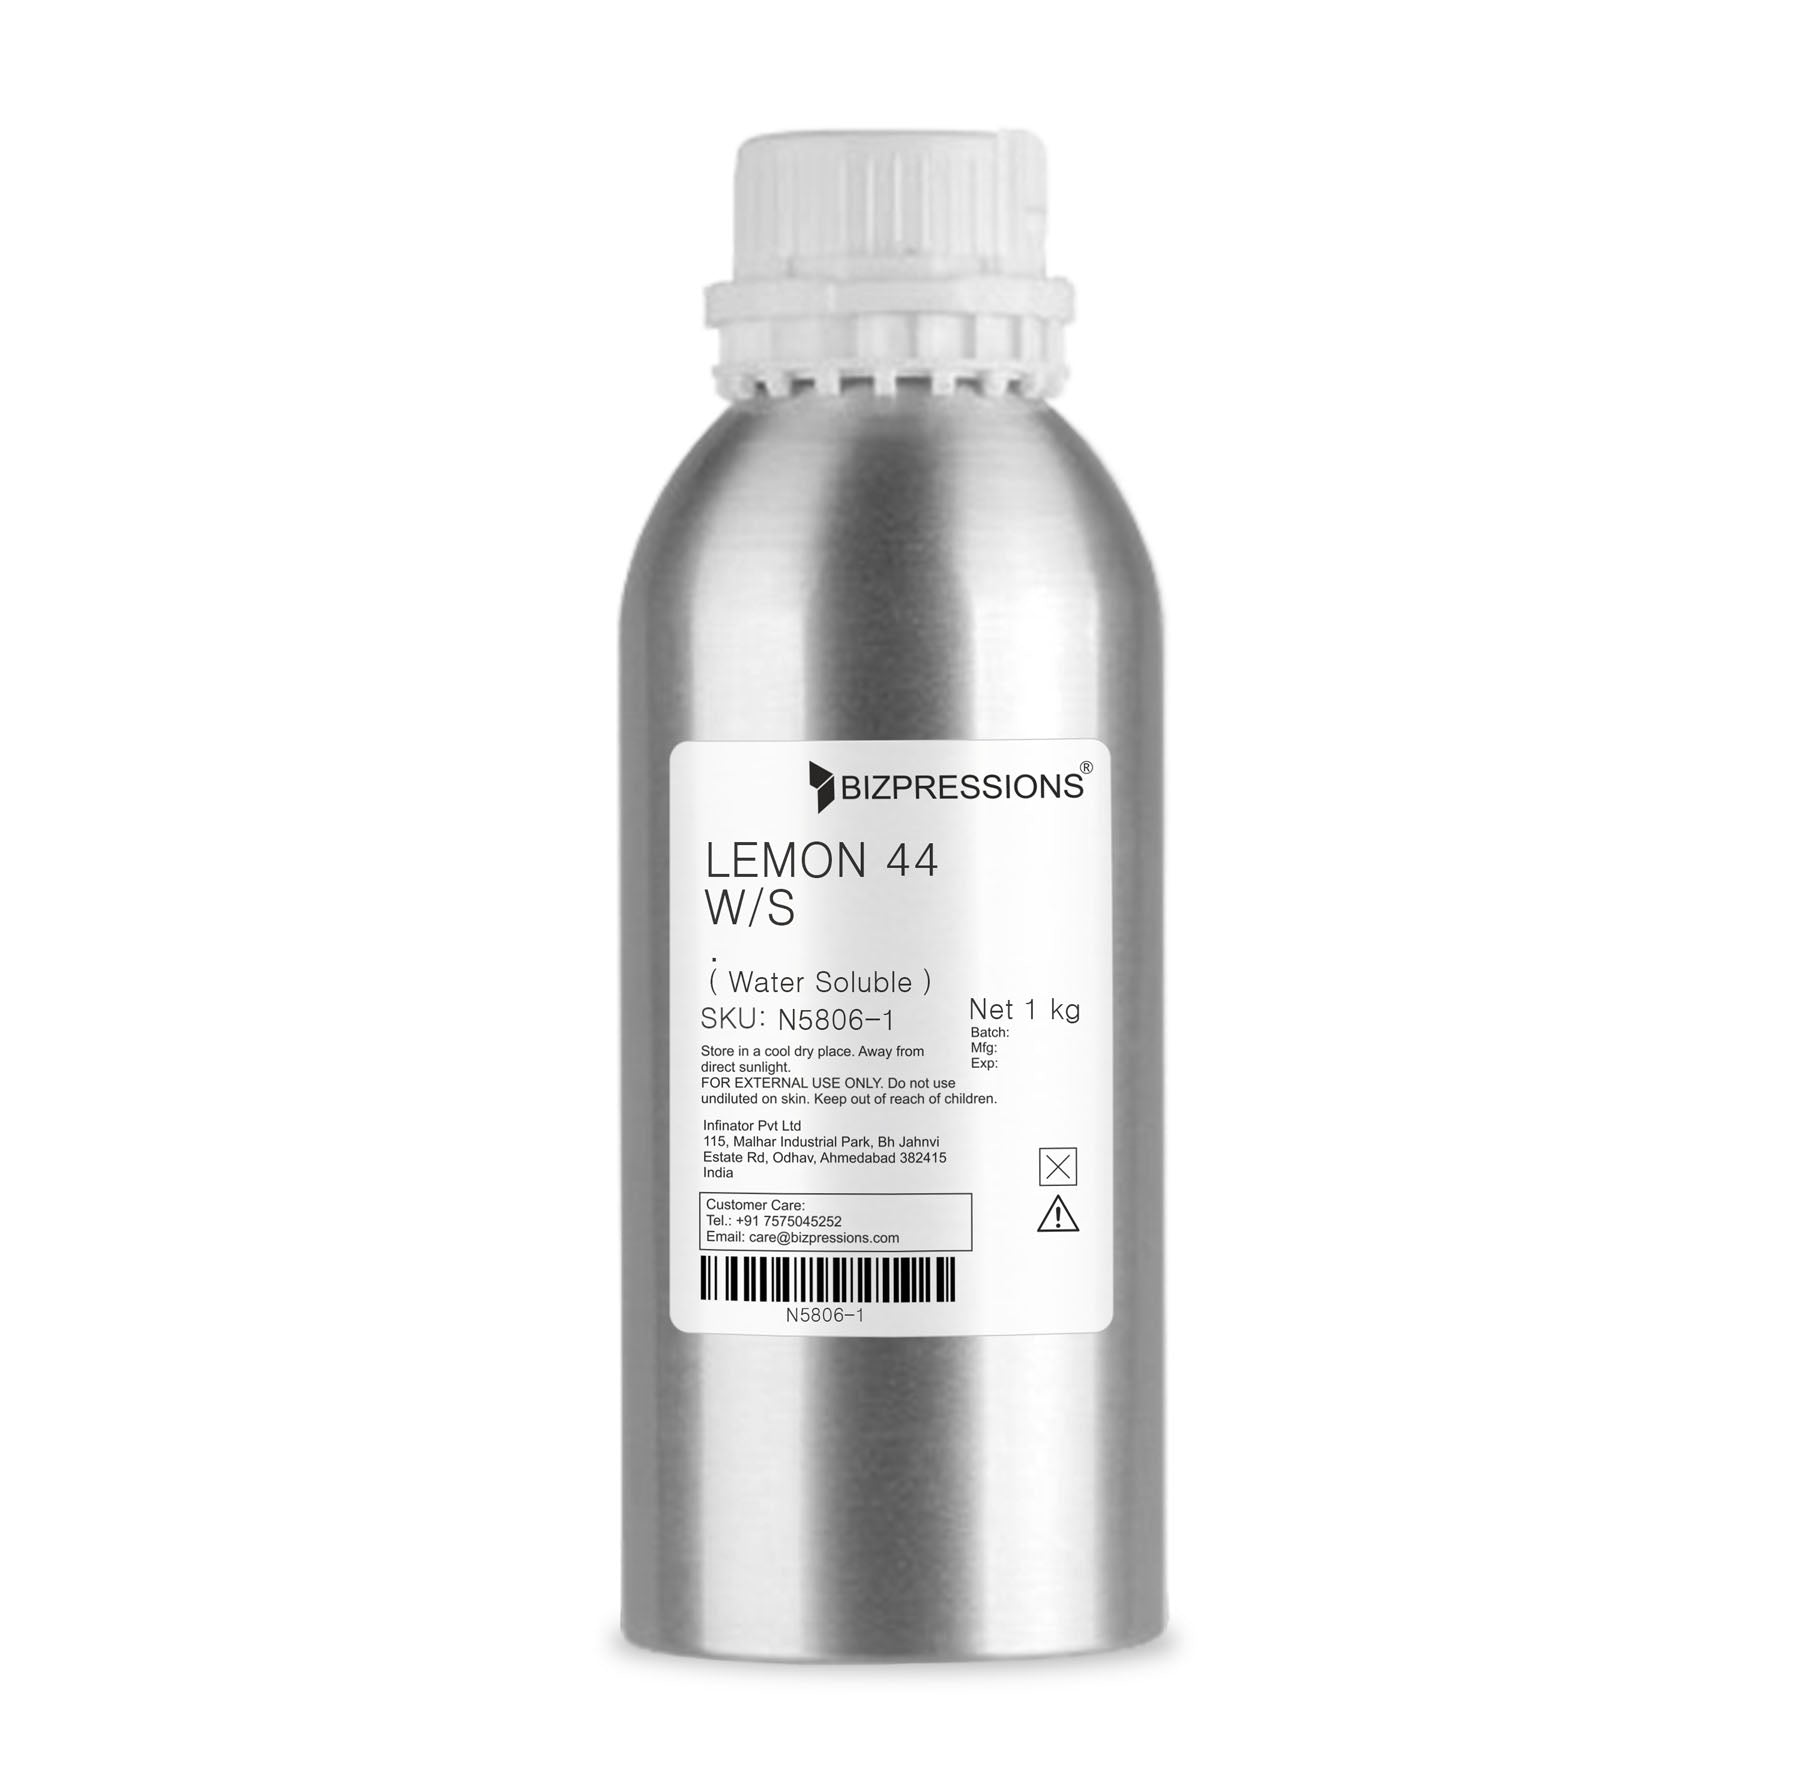 LEMON 44 W/S - Fragrance ( Water Soluble ) - 1 kg